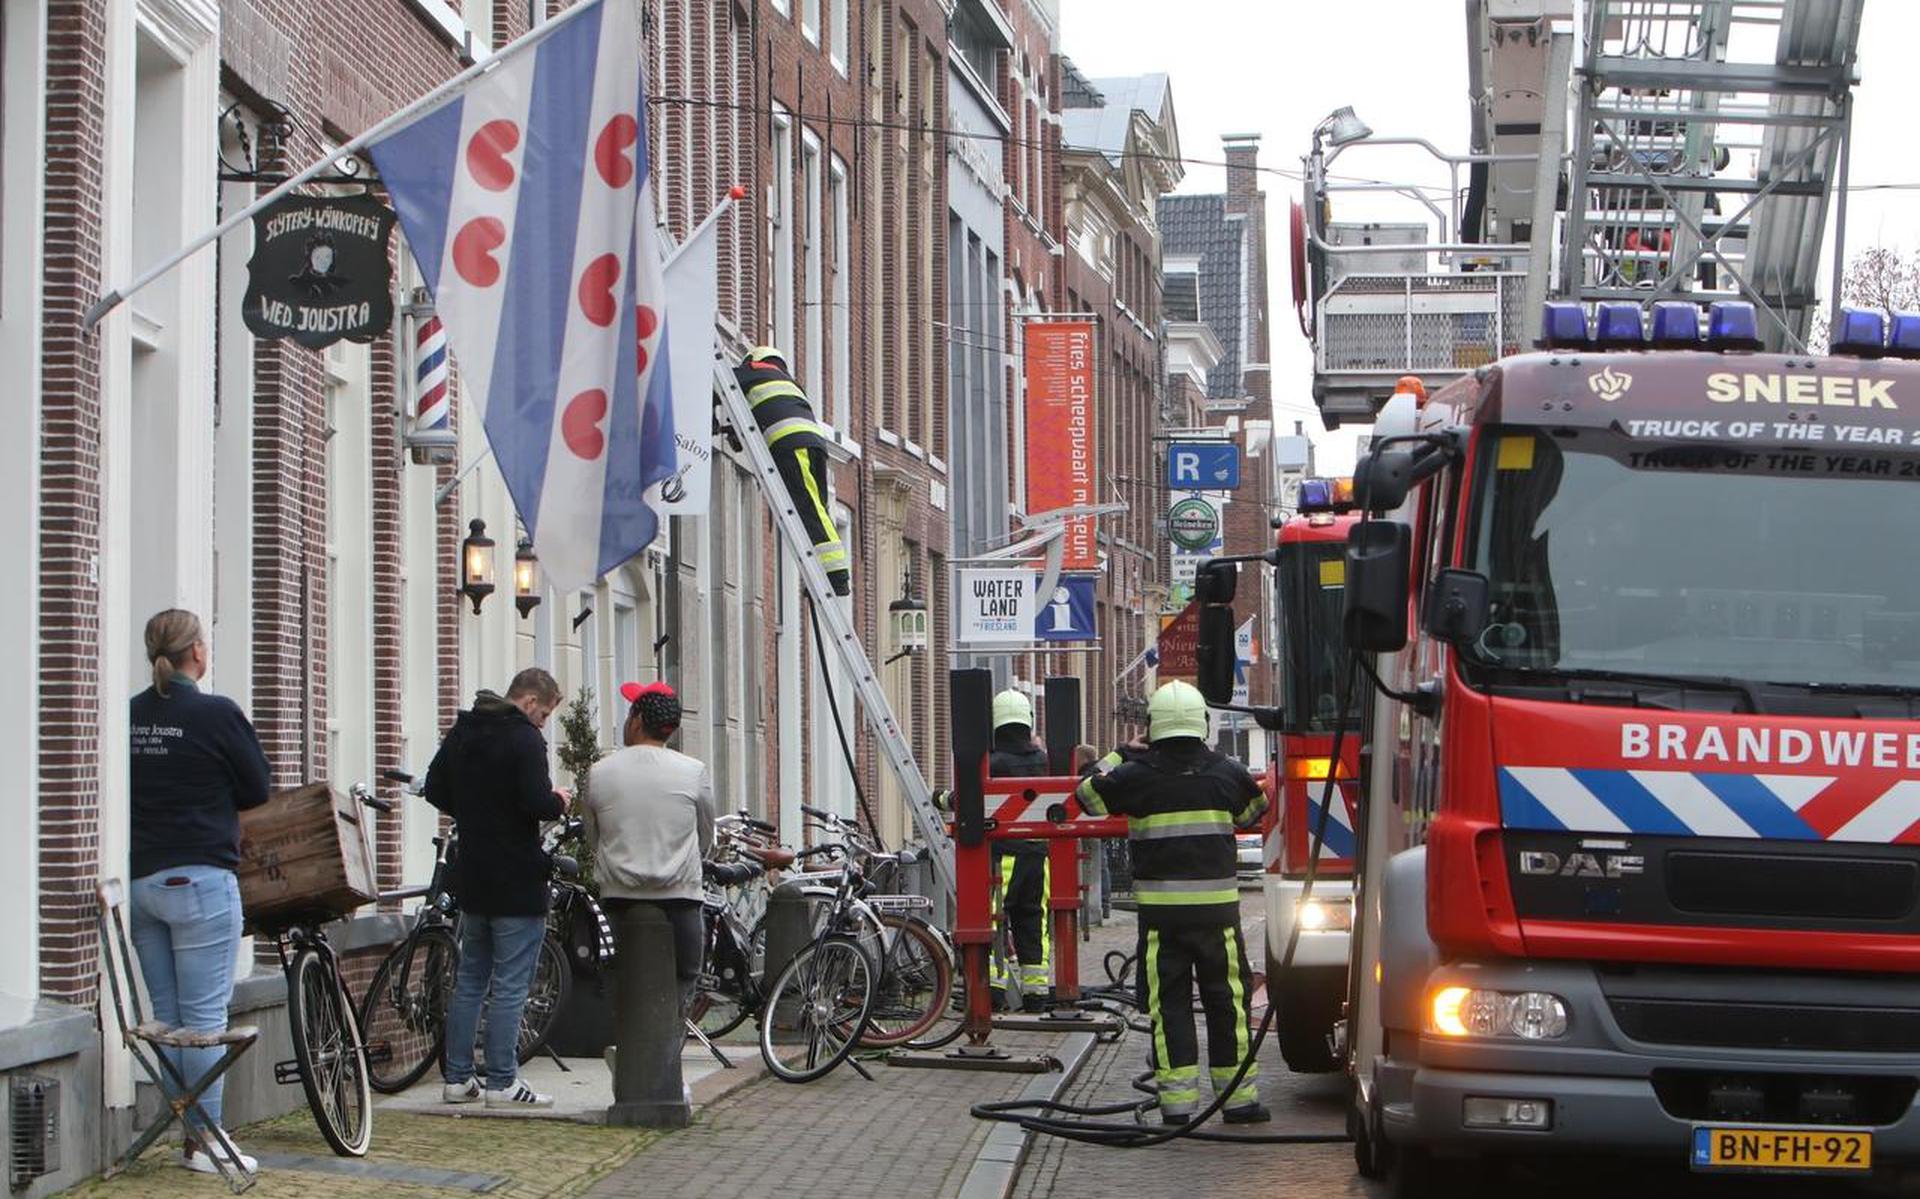 November vorig jaar woedde er een korte brand in het Scheepsvaartmuseum Sneek..